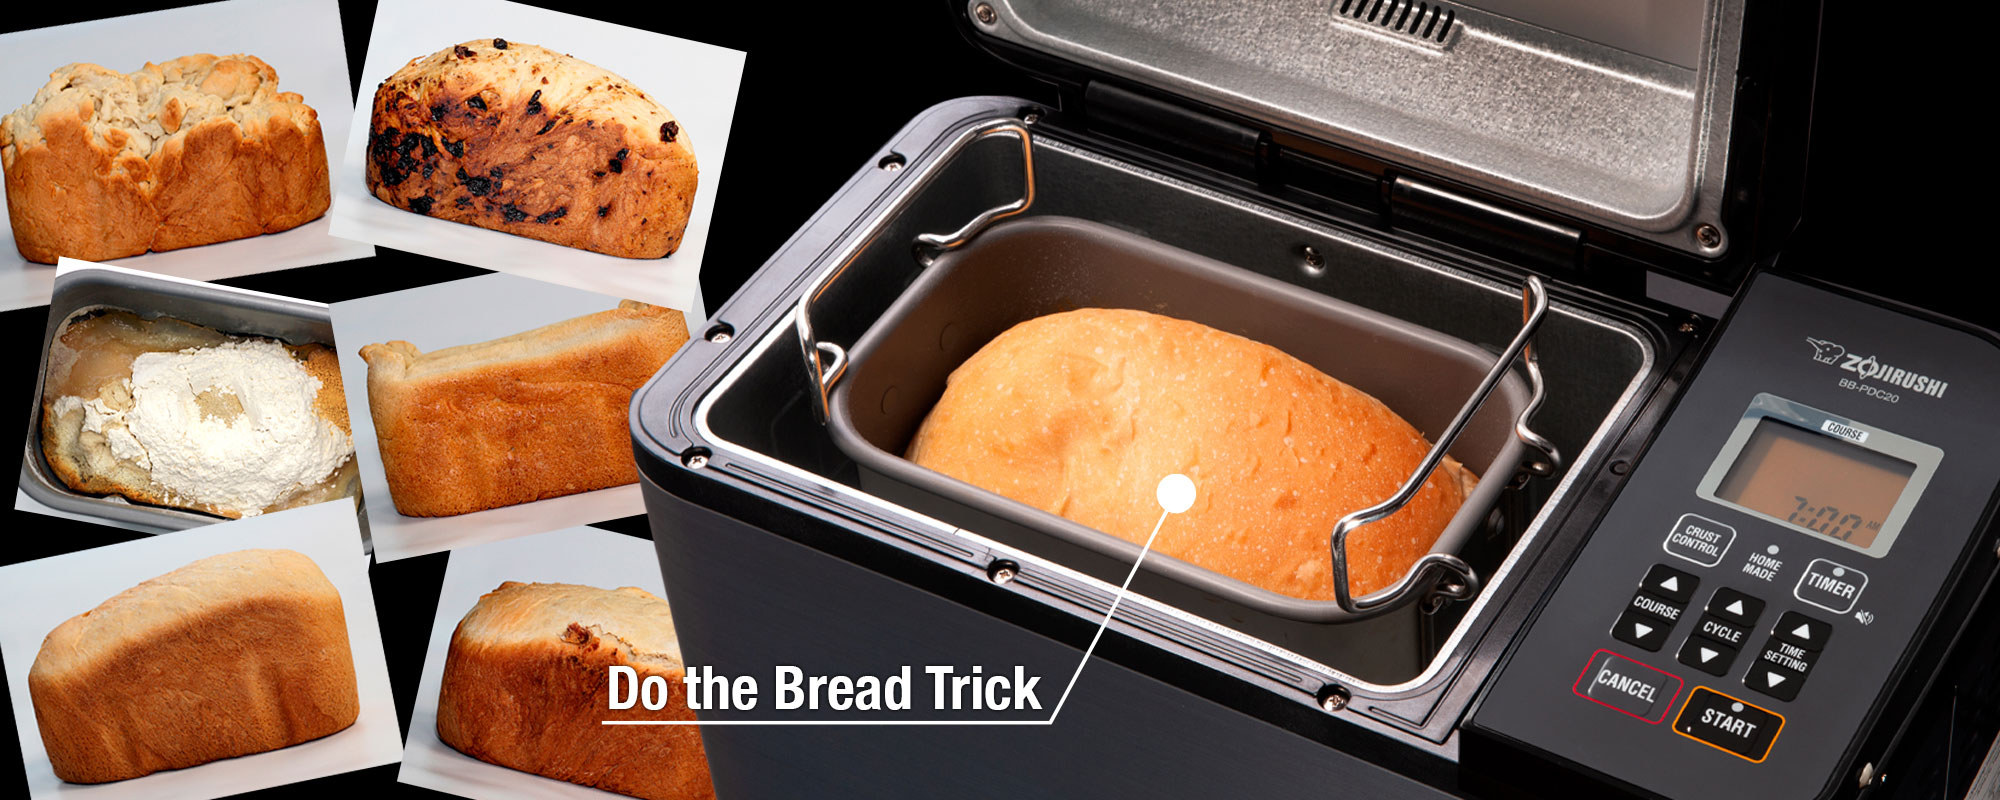 Do the Bread Trick